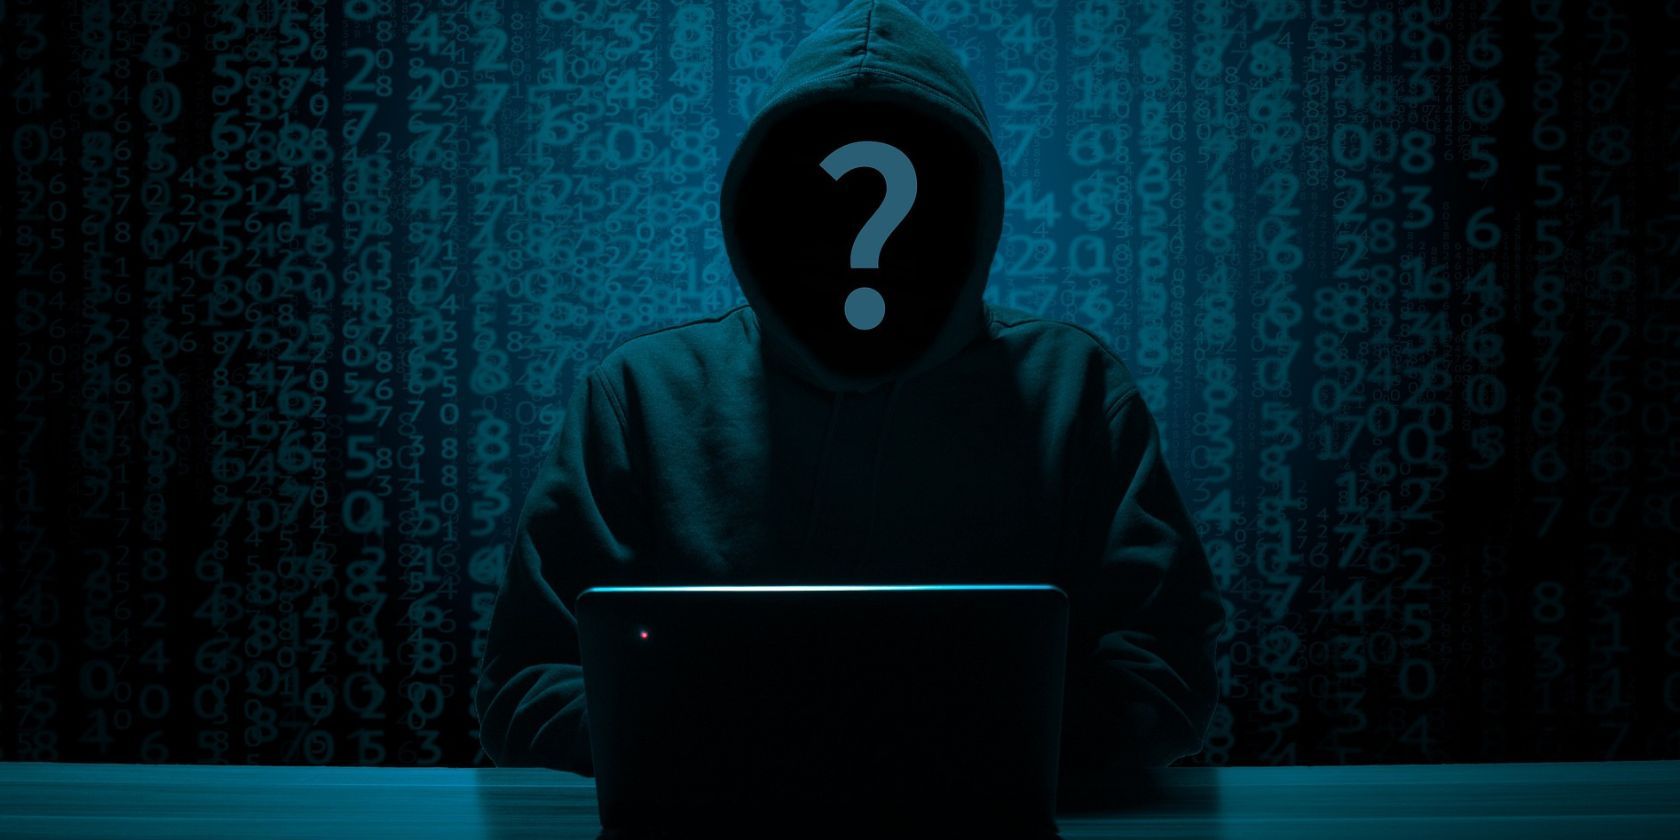 una figura anónima encapuchada en una computadora portátil oscurecida por un signo de interrogación